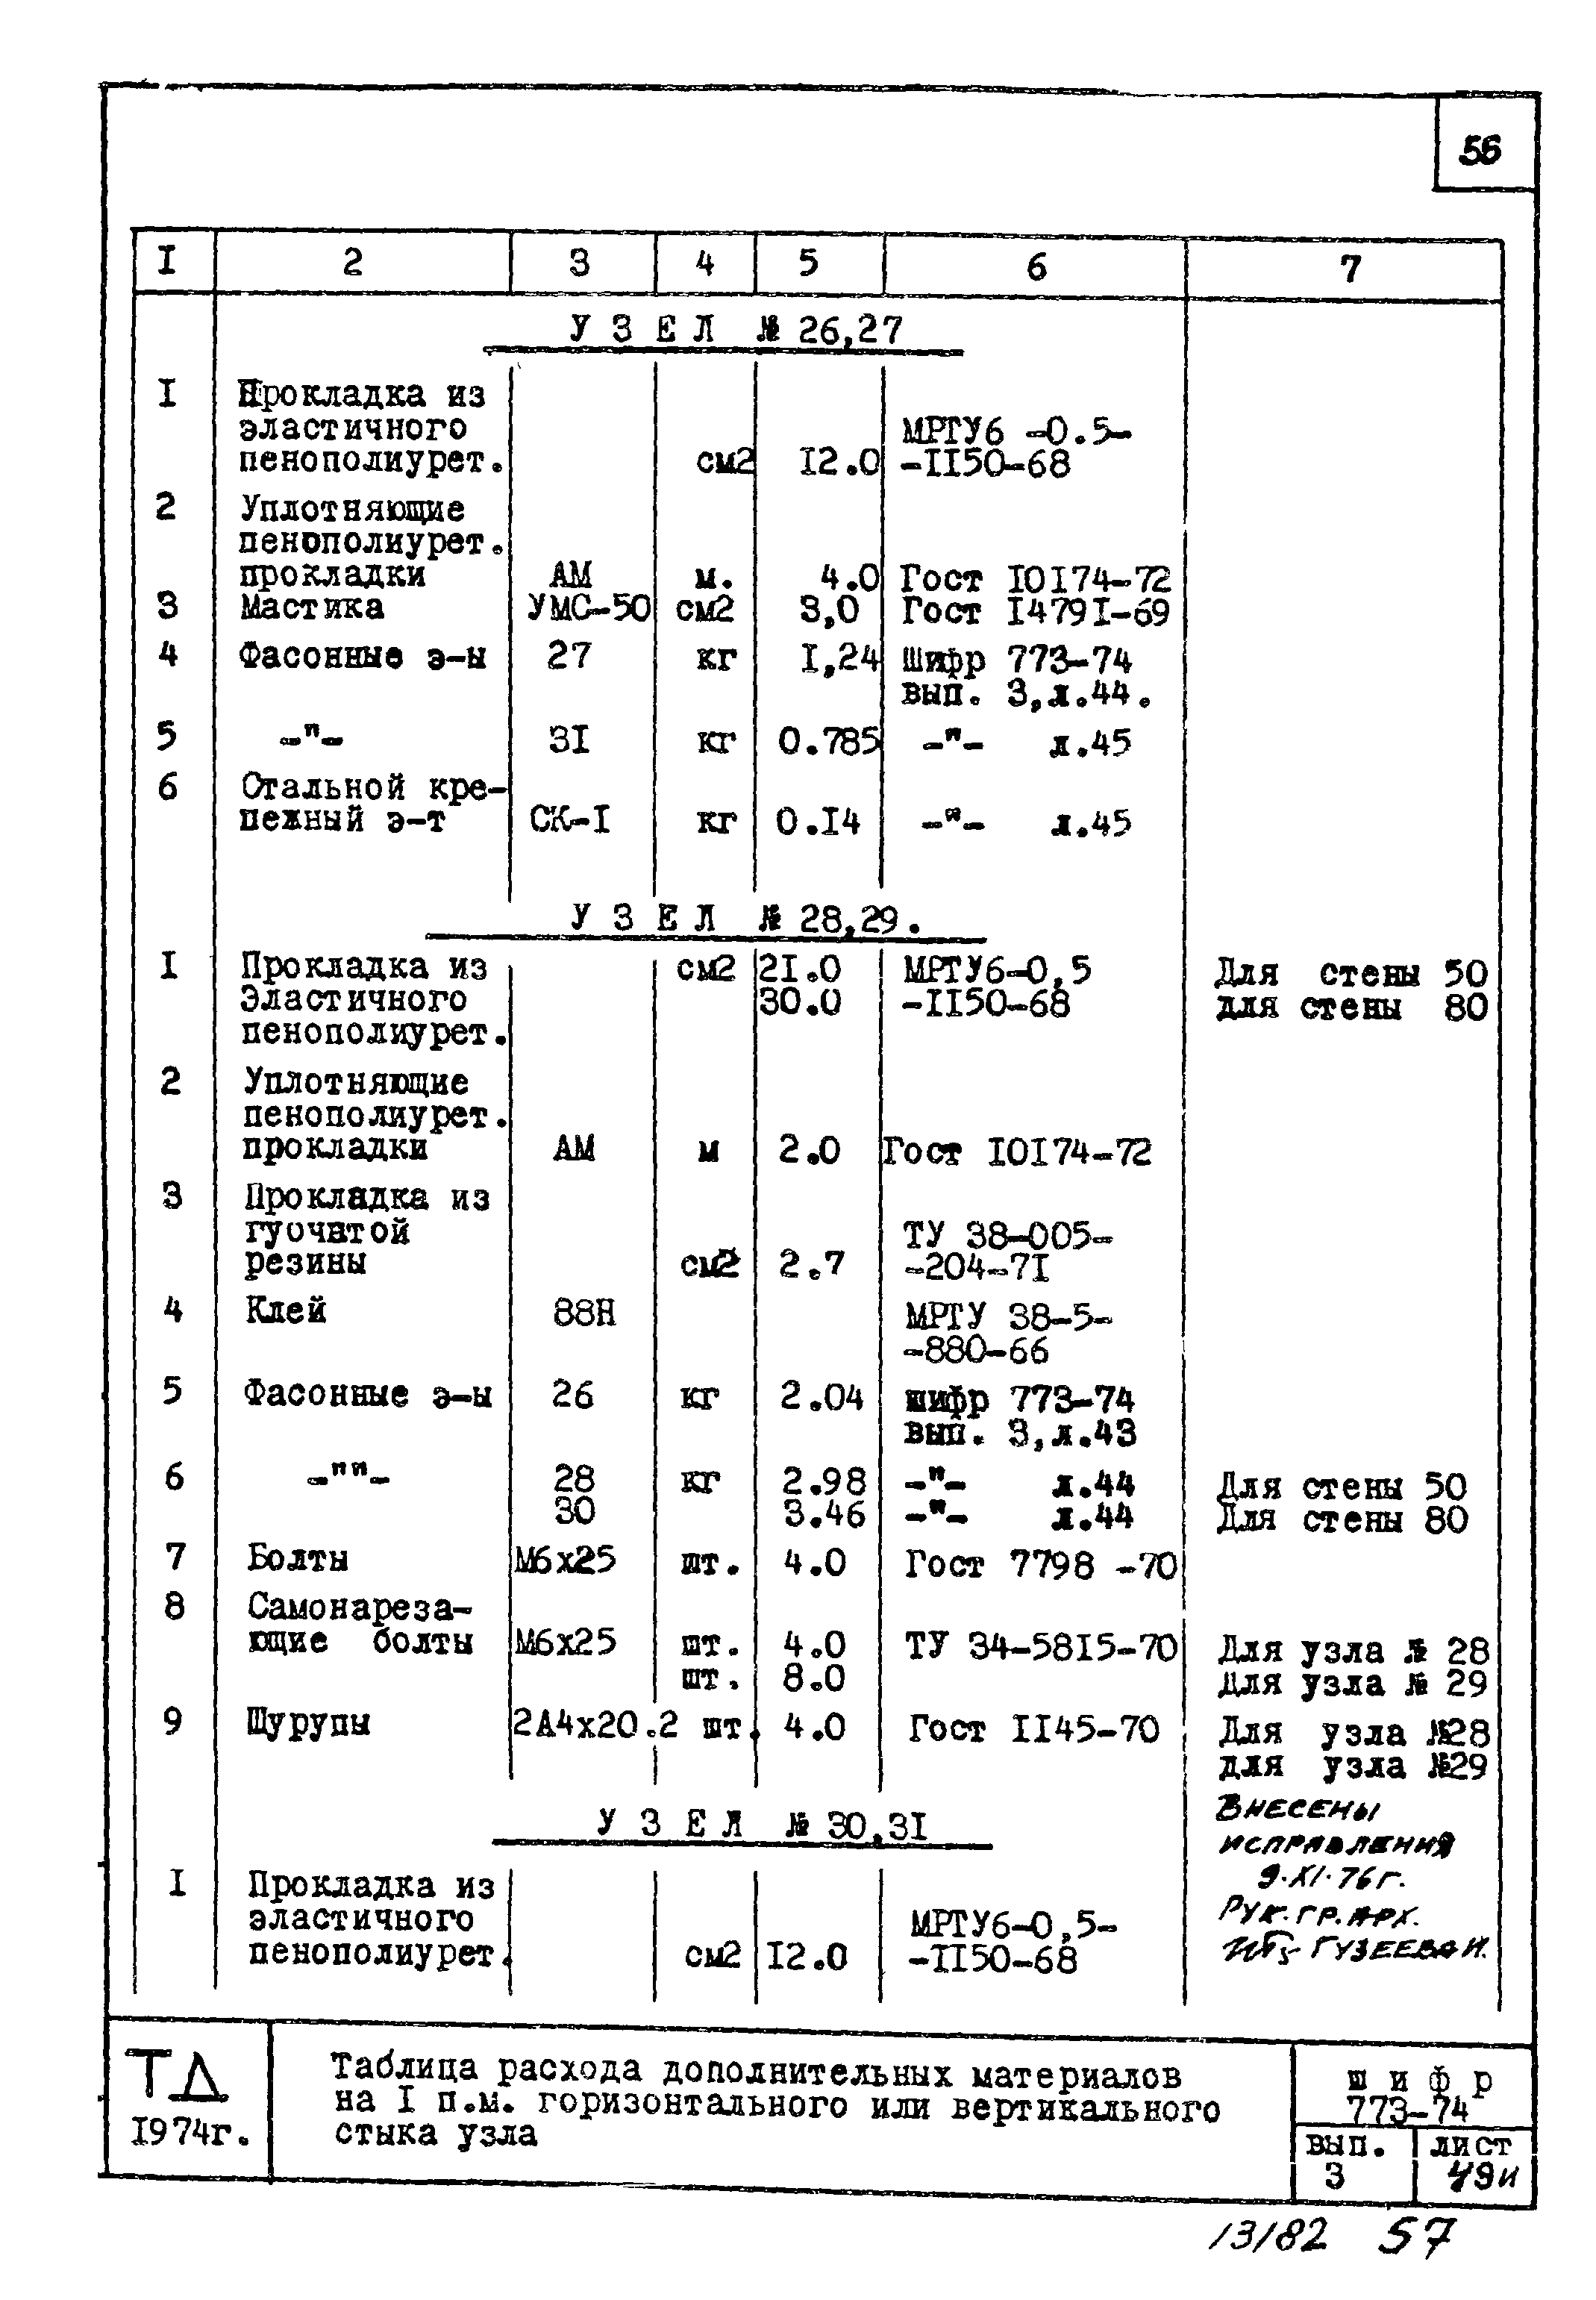 Шифр 773-74